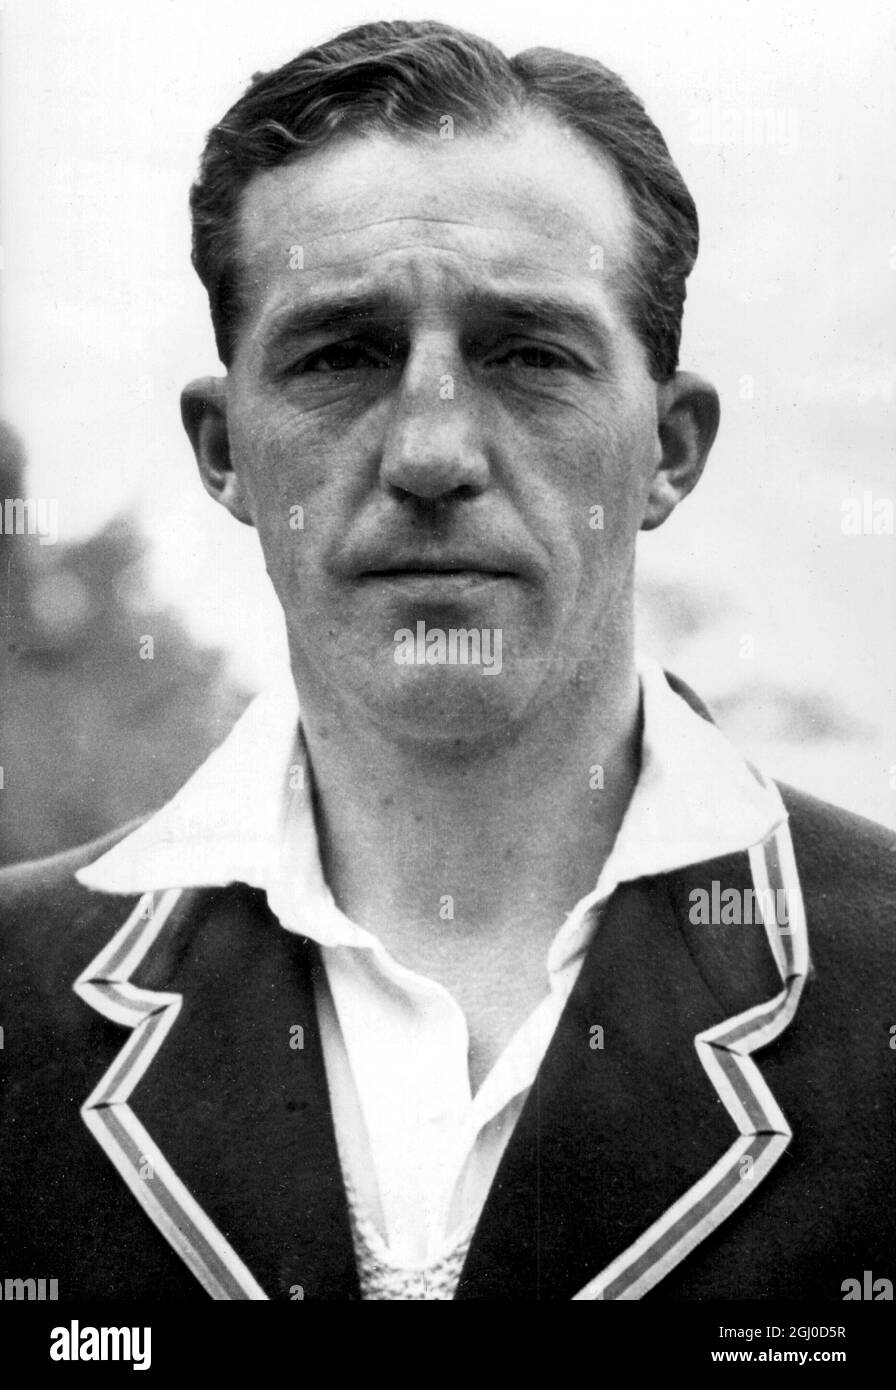 W.J. Edrich di Middlesex, che è stato scelto per la squadra inglese per incontrare l'Australia nel primo test match a Nottingham. 7 giugno 1948 Foto Stock